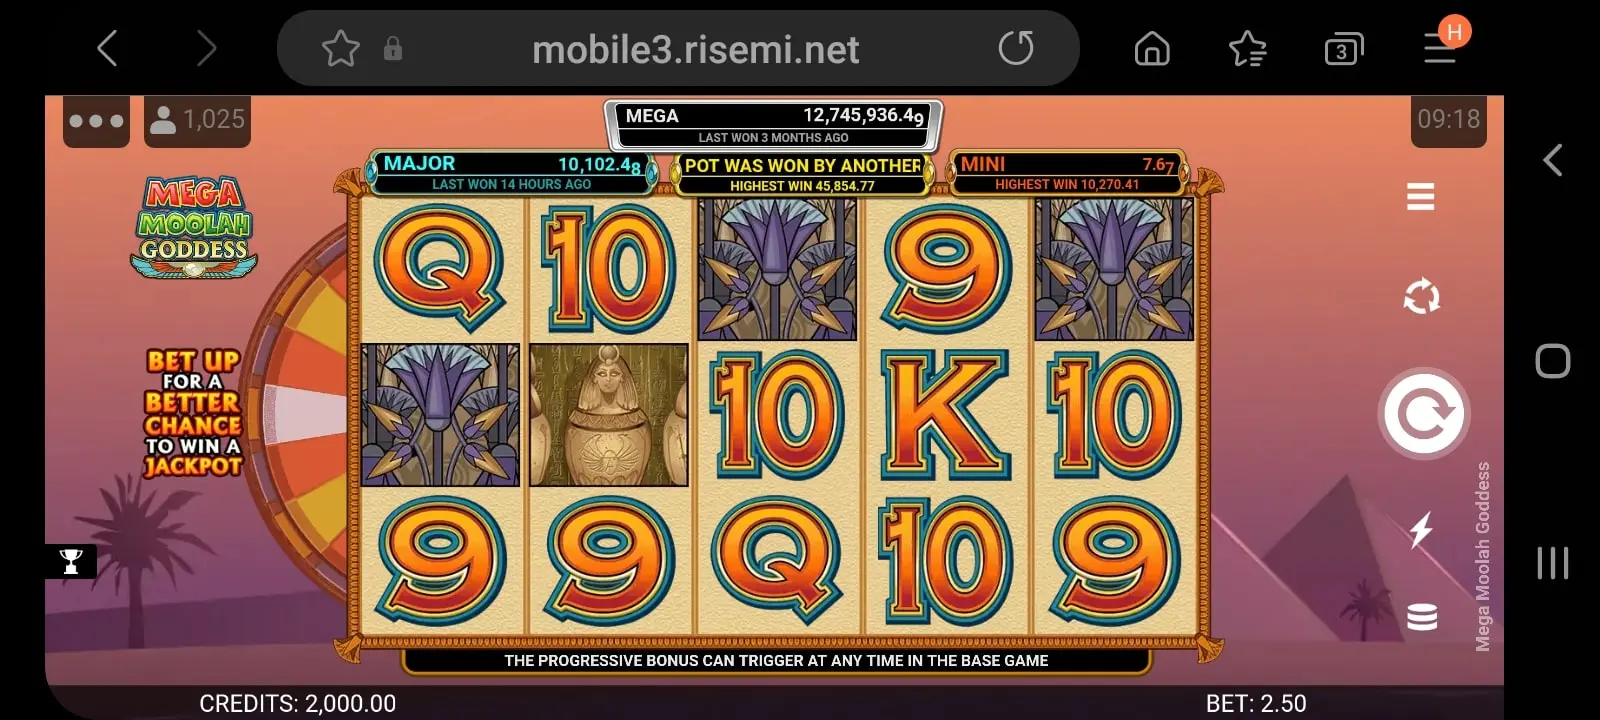 gunsbet casino app screenshot 6